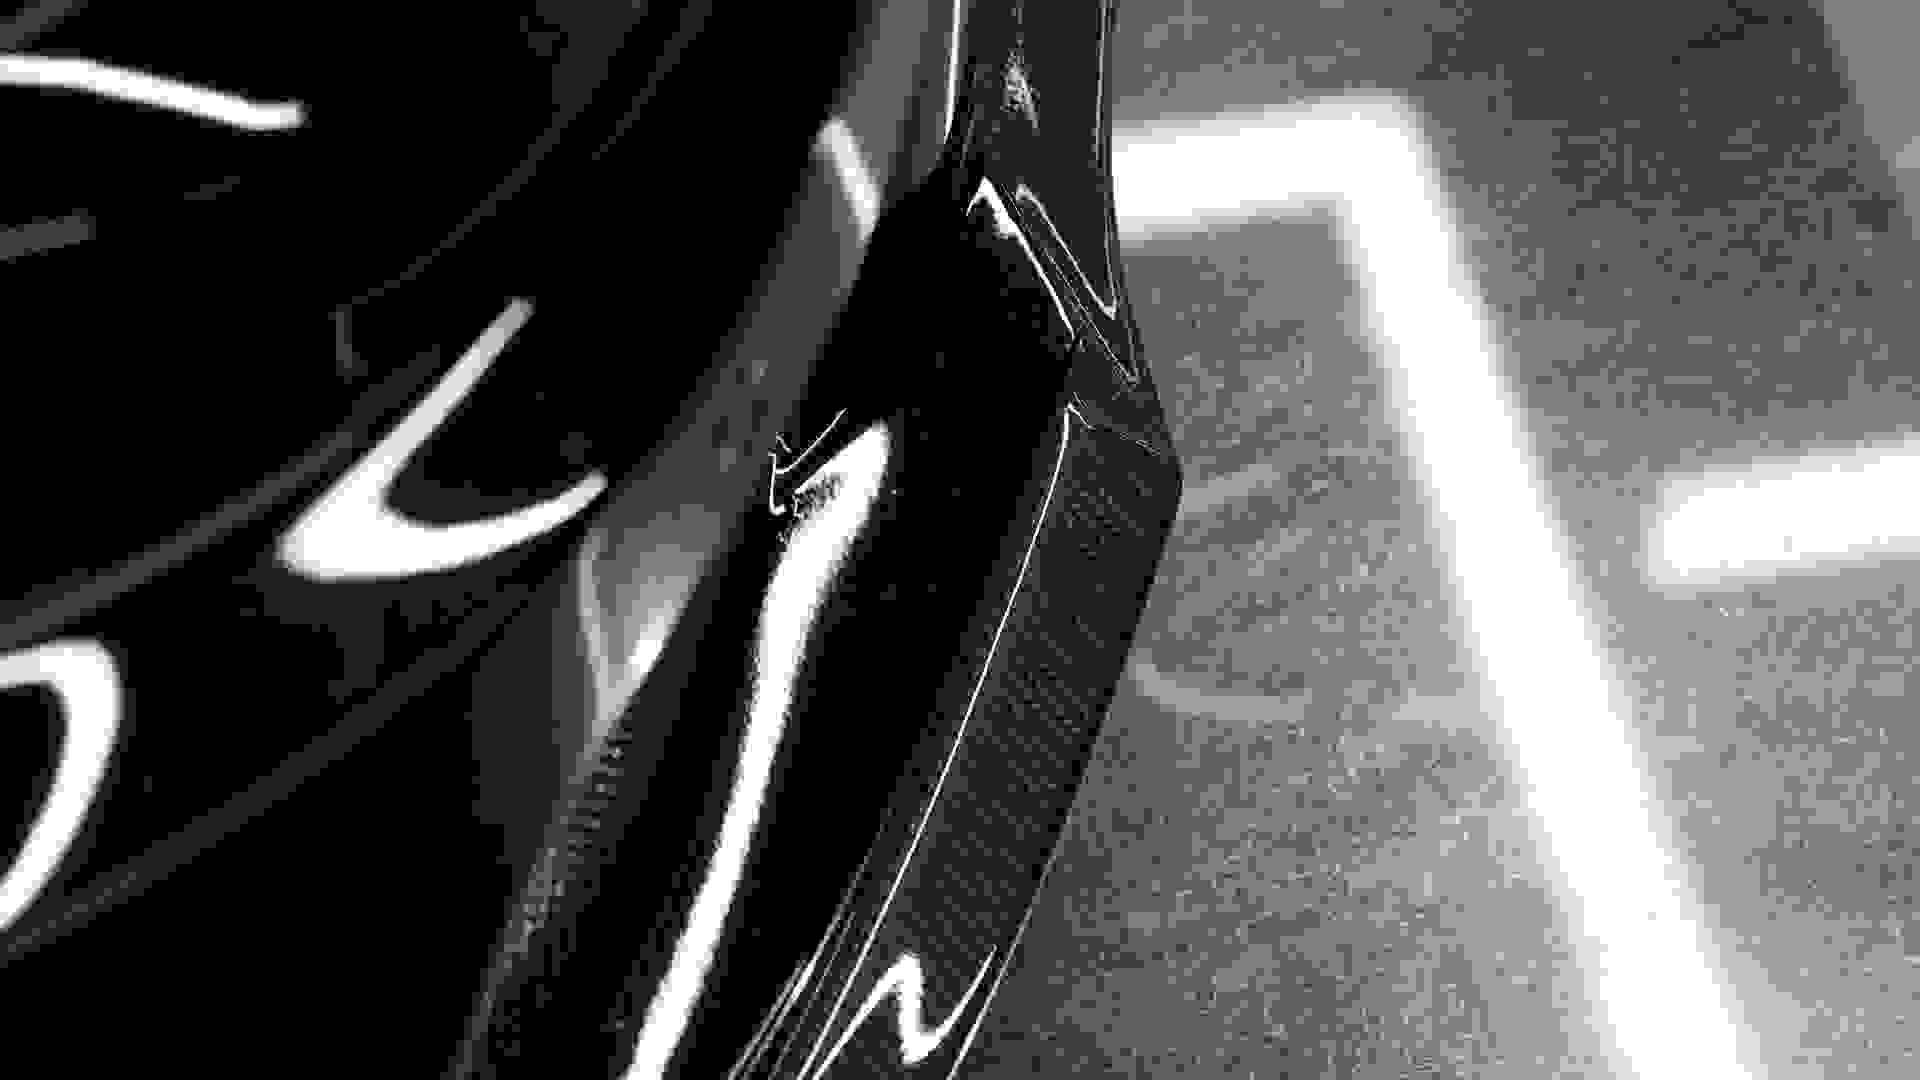 Mercedes-Benz C63 AMG Photo 8a71f9dd-5772-4acc-94e3-3ba6a0be4883.jpg